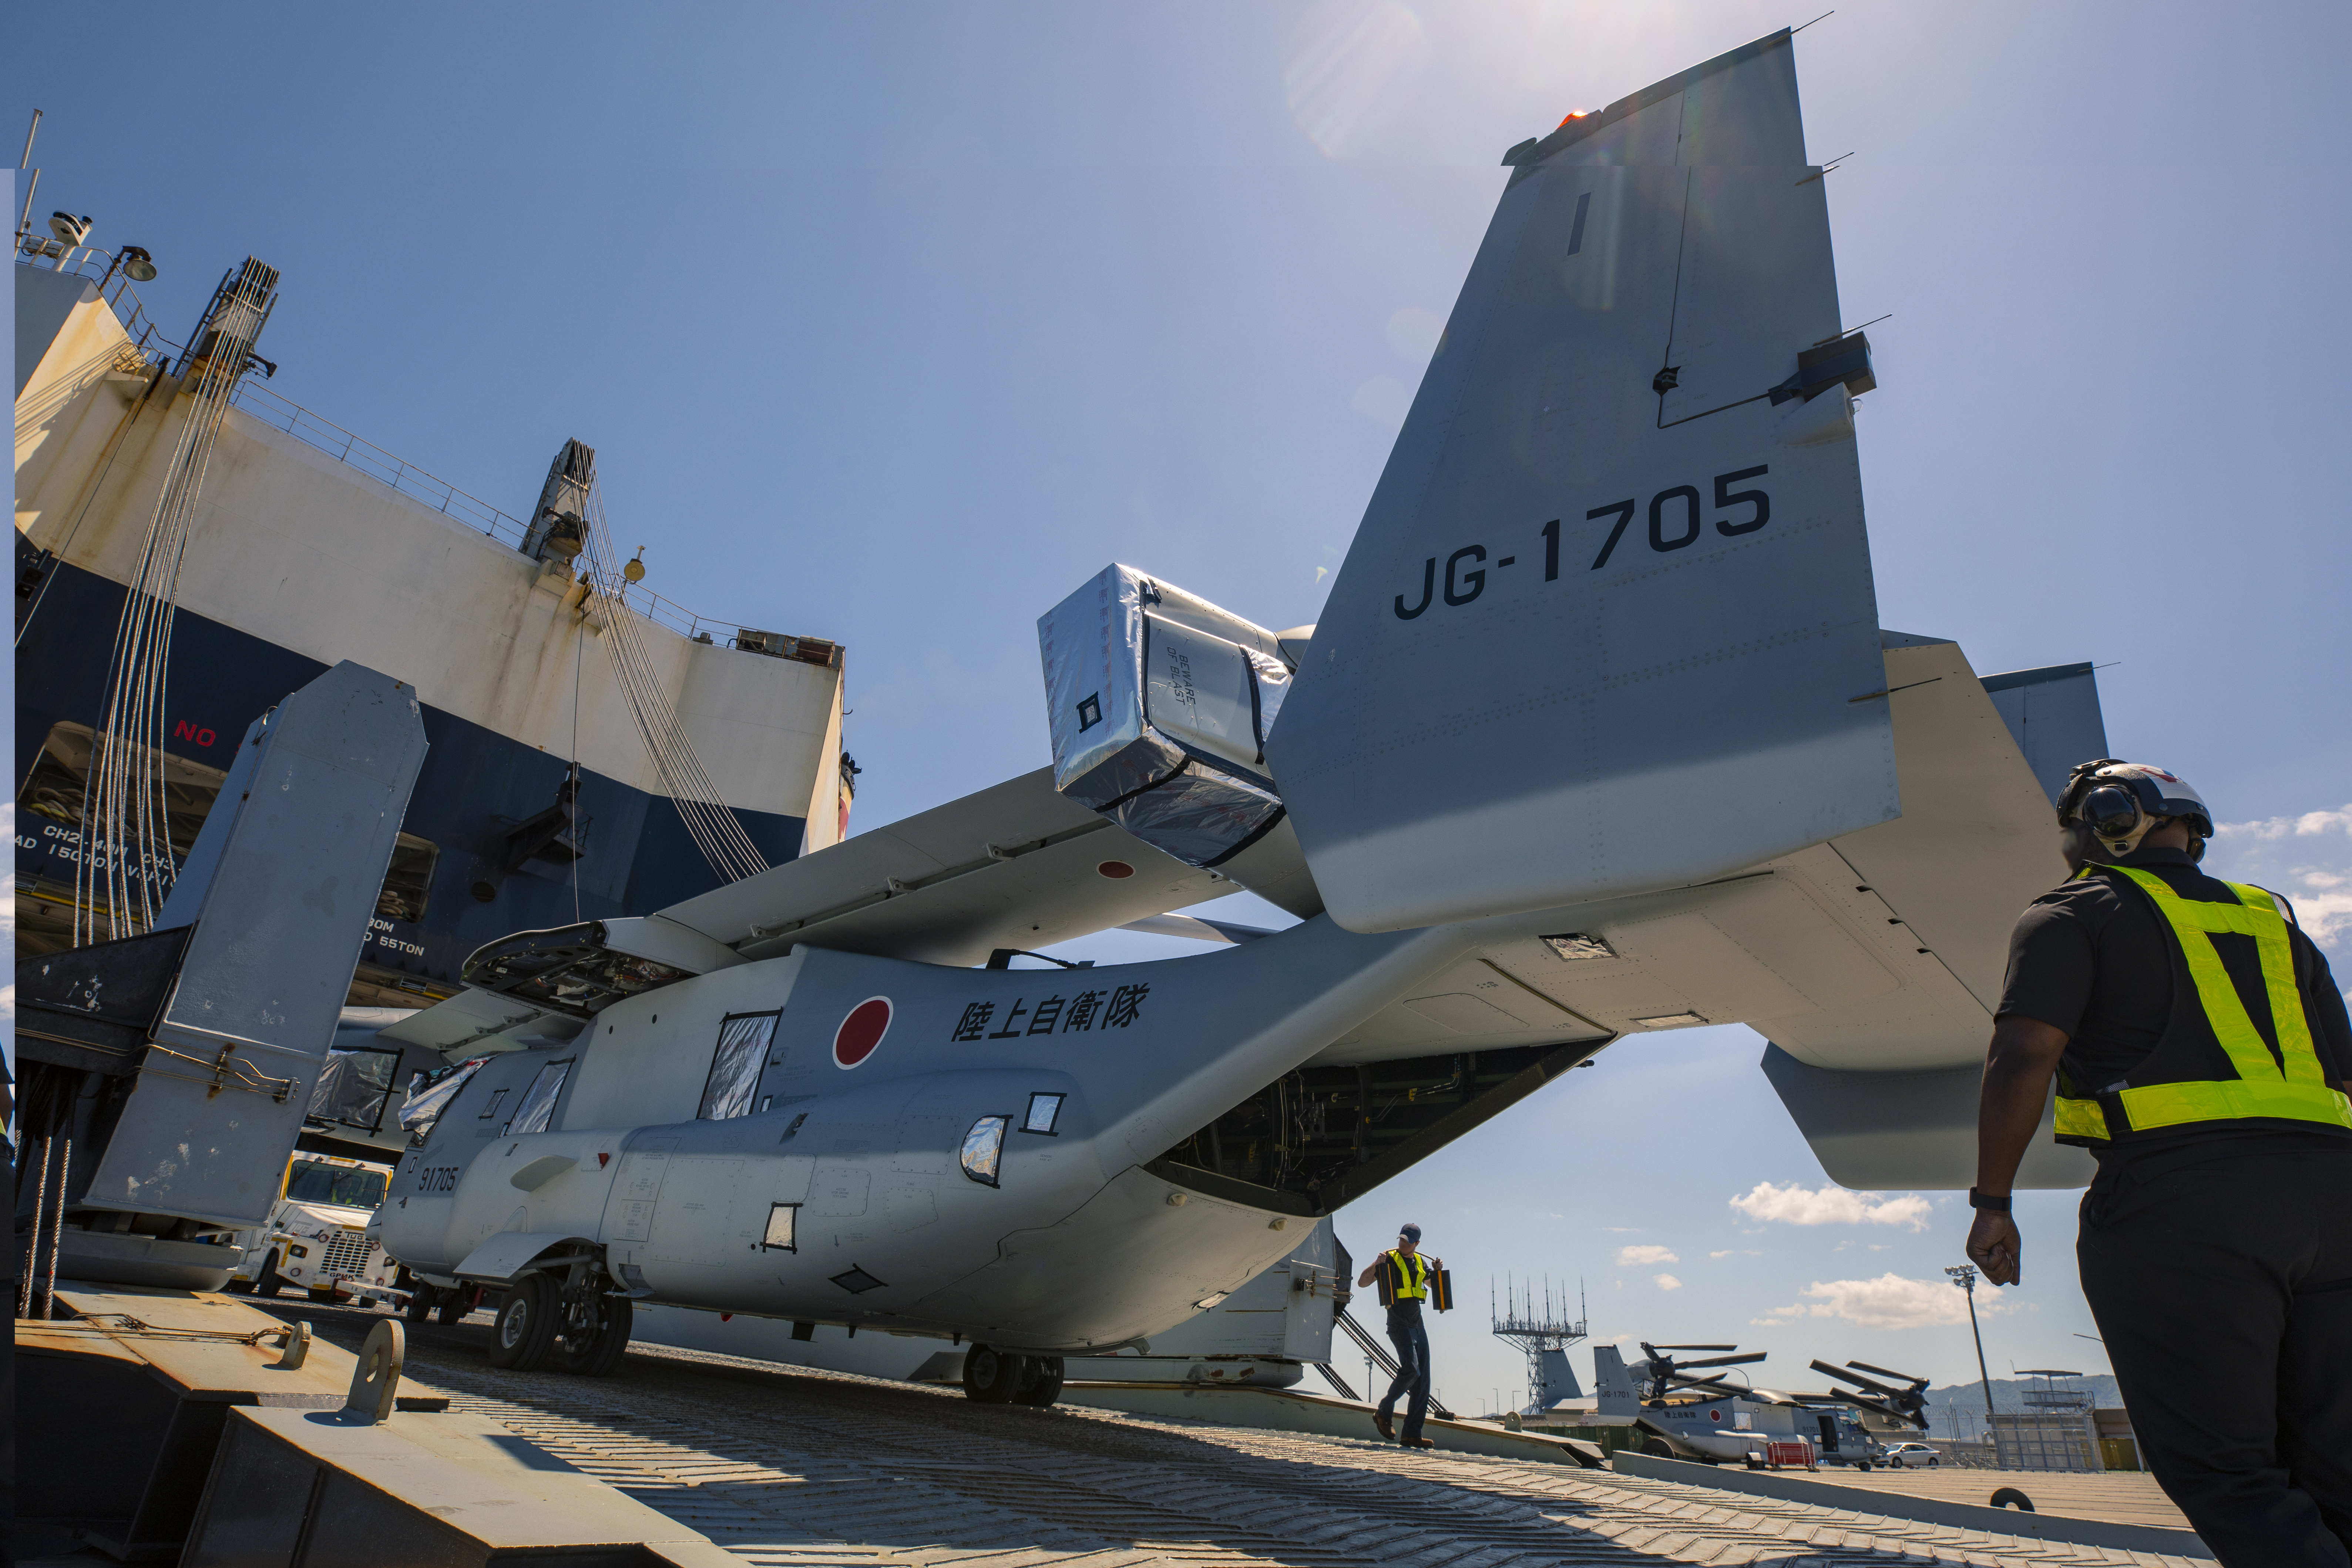 Первые японские конвертопланы прибыли в страну: выгрузка V-22 Osprey, предназначенного для ВВС Сил самообороны Японии, в базе КМП США в Японии Iwakuni, фото сделано 8 мая 2020 года